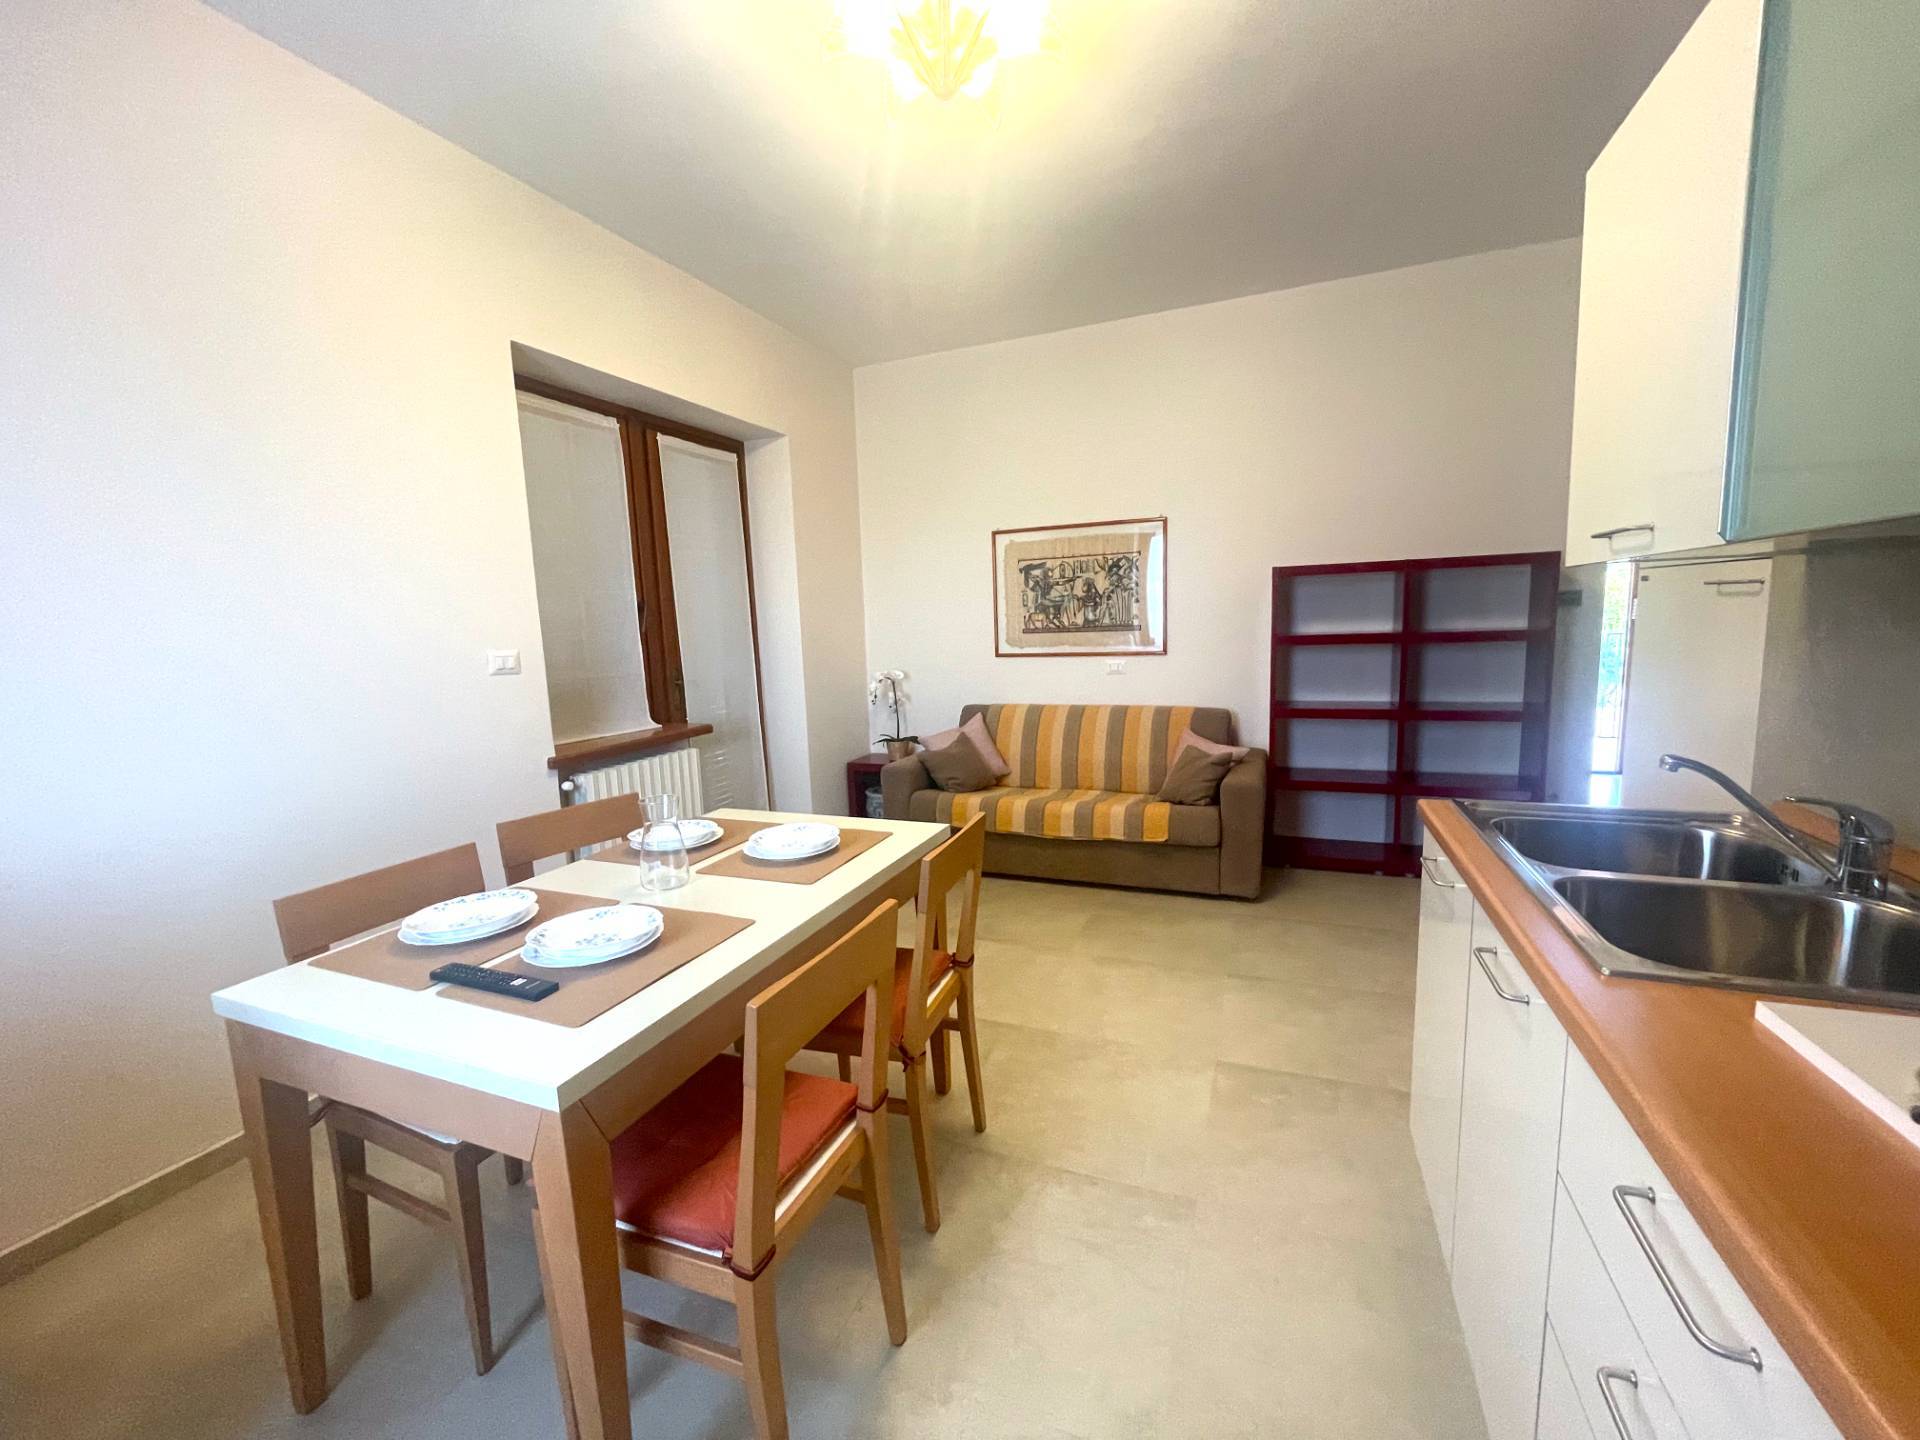 Appartamento in affitto a Caselle Torinese, 2 locali, prezzo € 650 | PortaleAgenzieImmobiliari.it